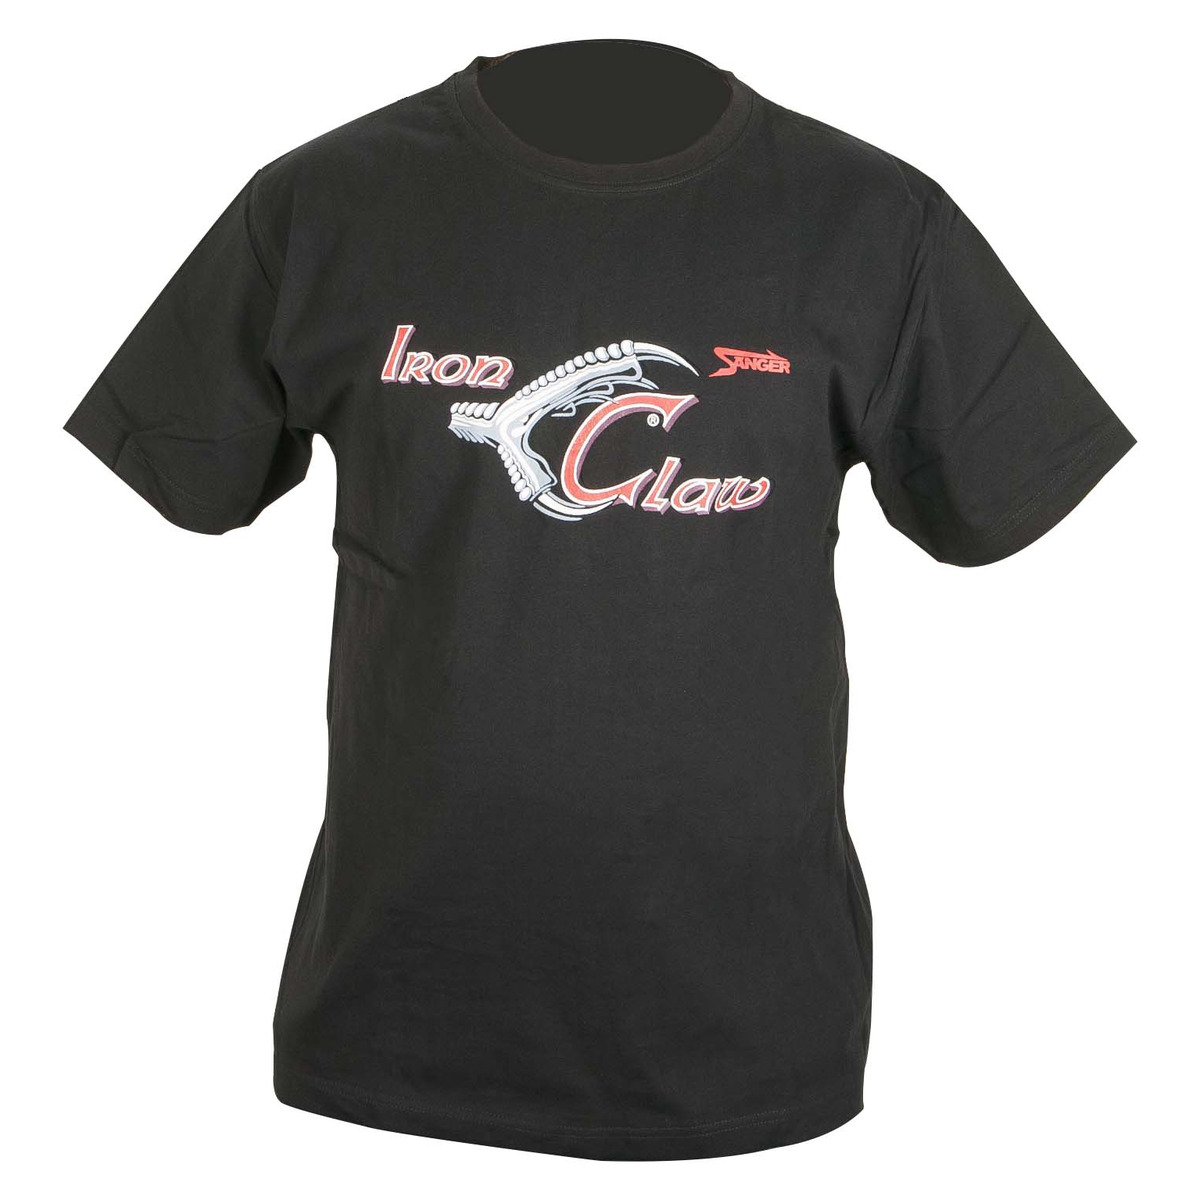 Iron Claw T-shirt - L